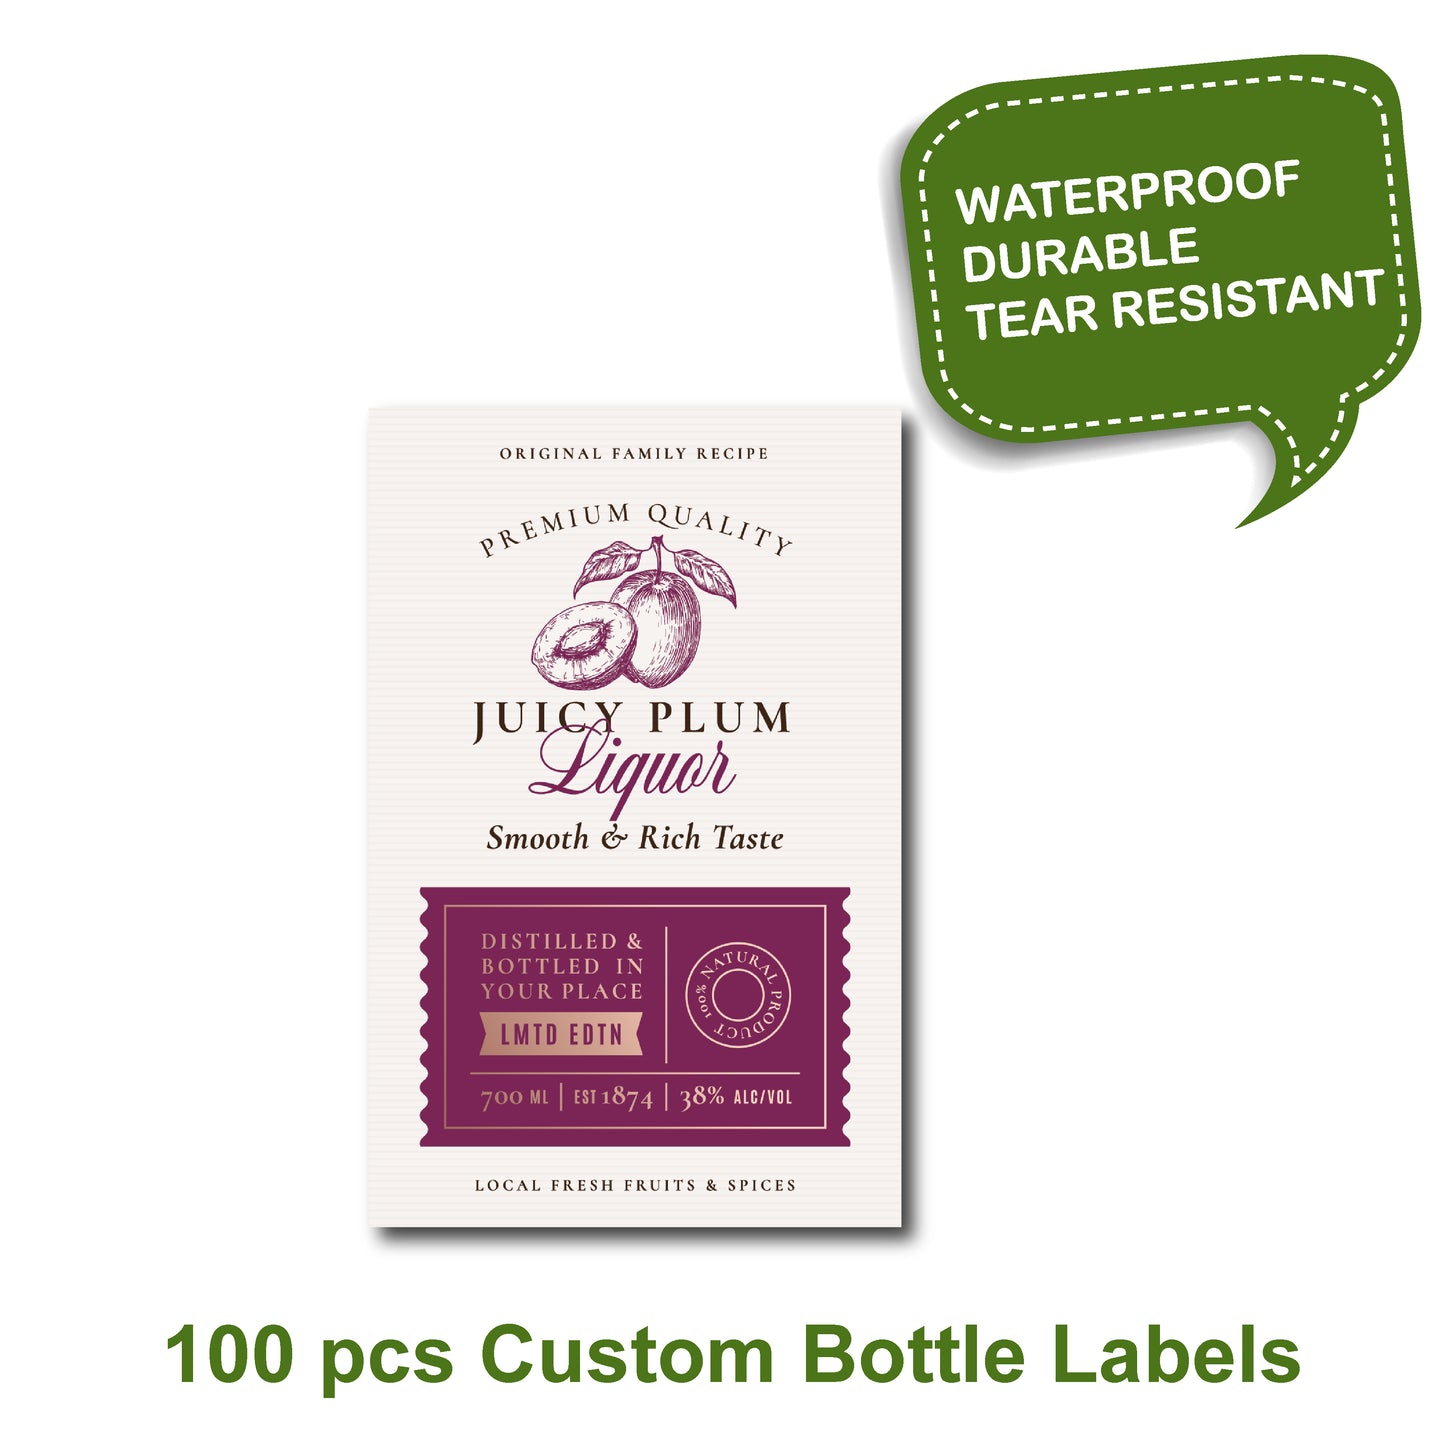 Juicy plum product label, 100 pcs Custom bottle labels, custom maple syrup label, custom label, custom candle label, custom product label, labels